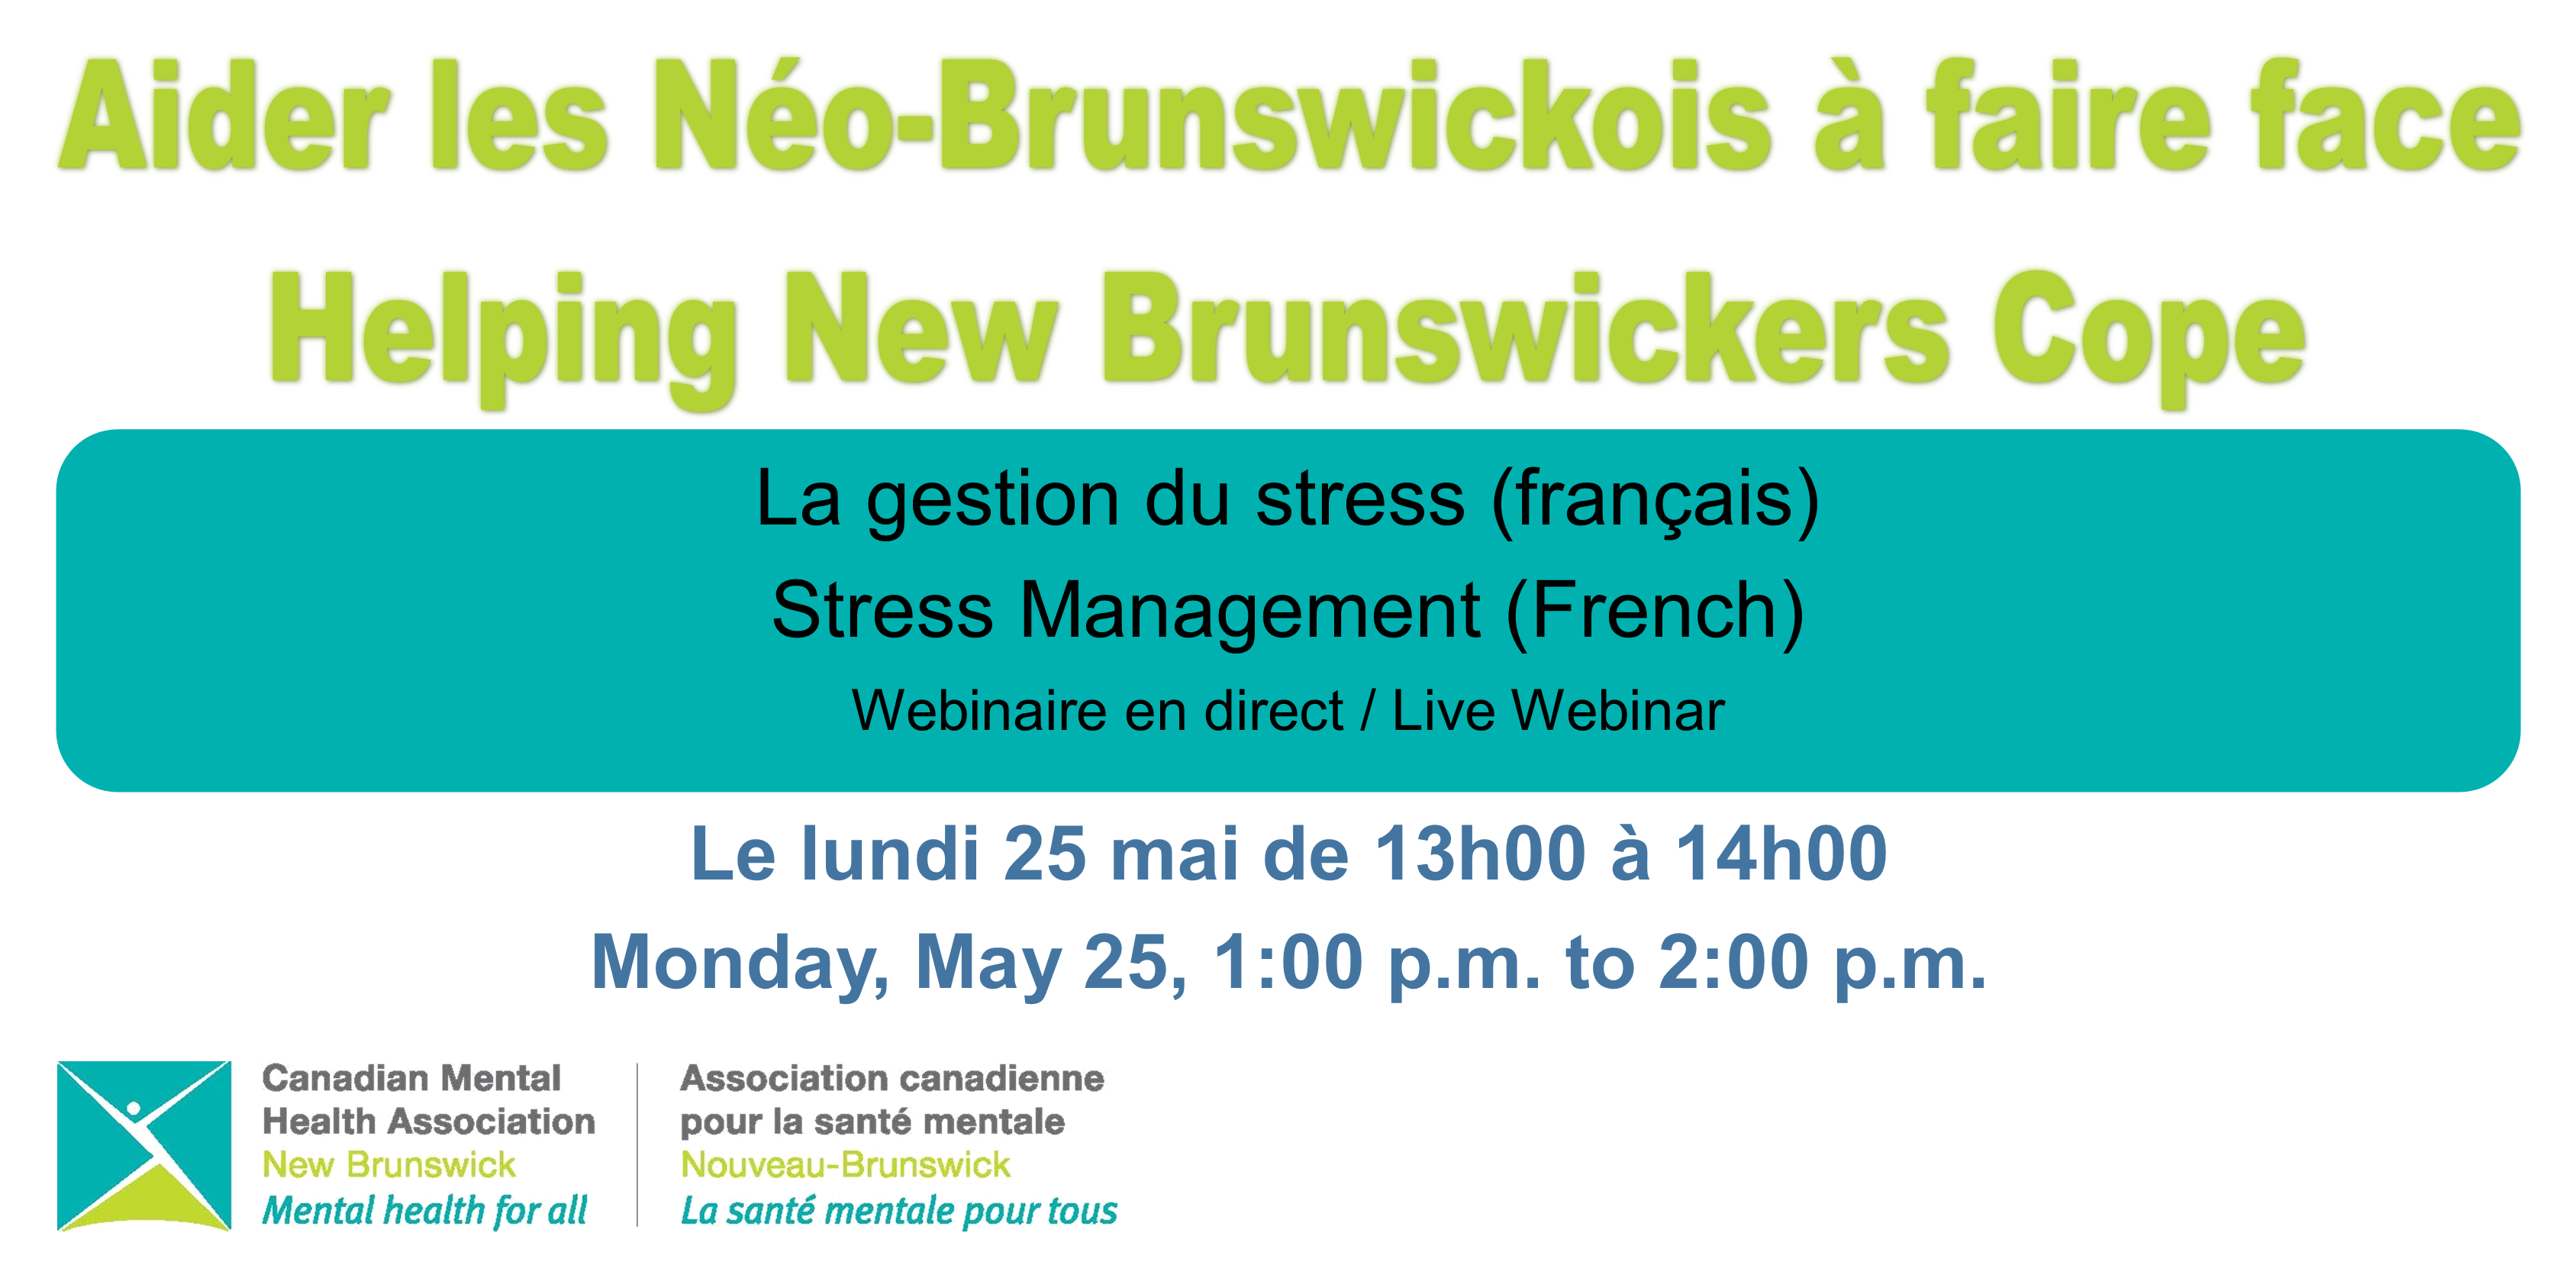 La gestion du stress (français) / Stress Management (French)